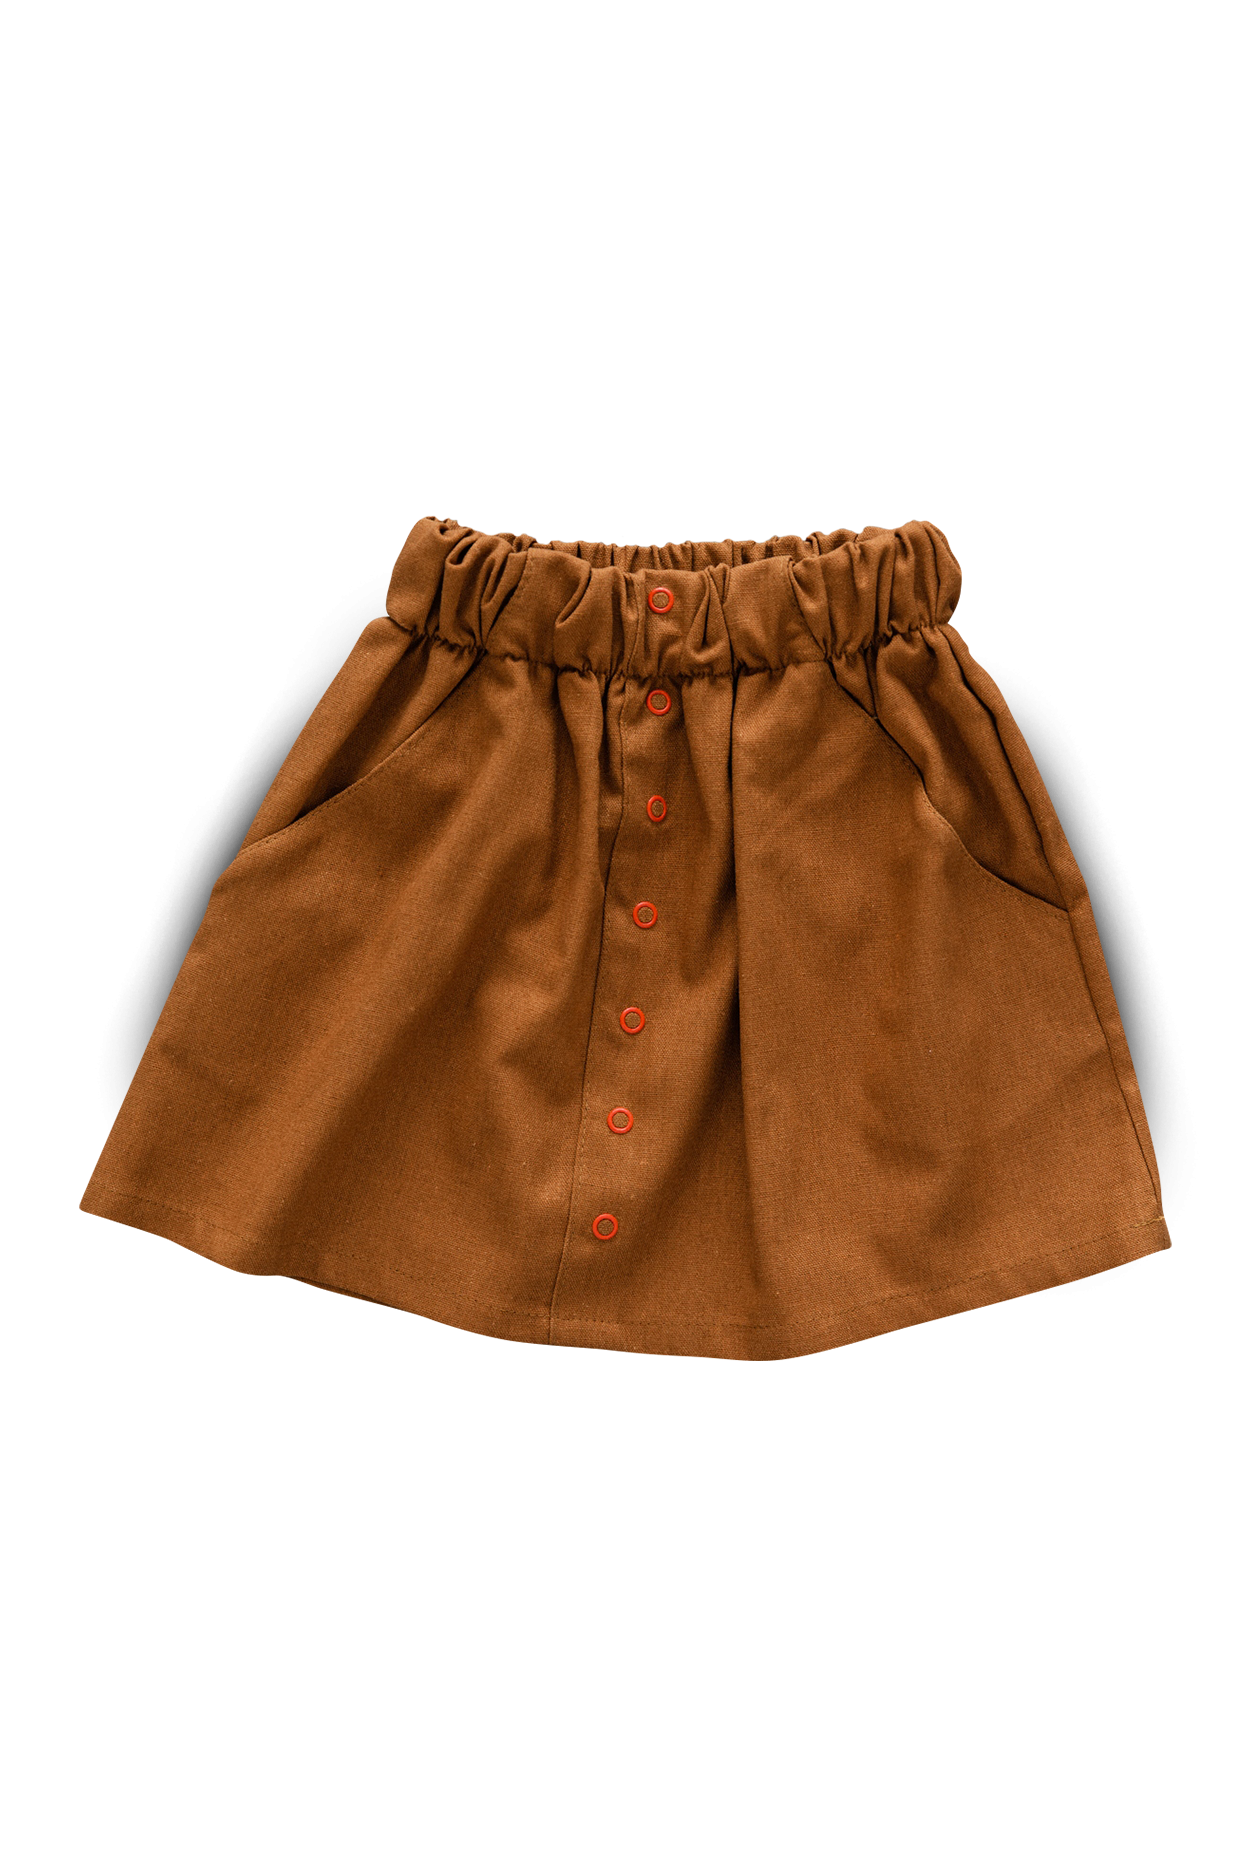 cinnamon skirt - mile